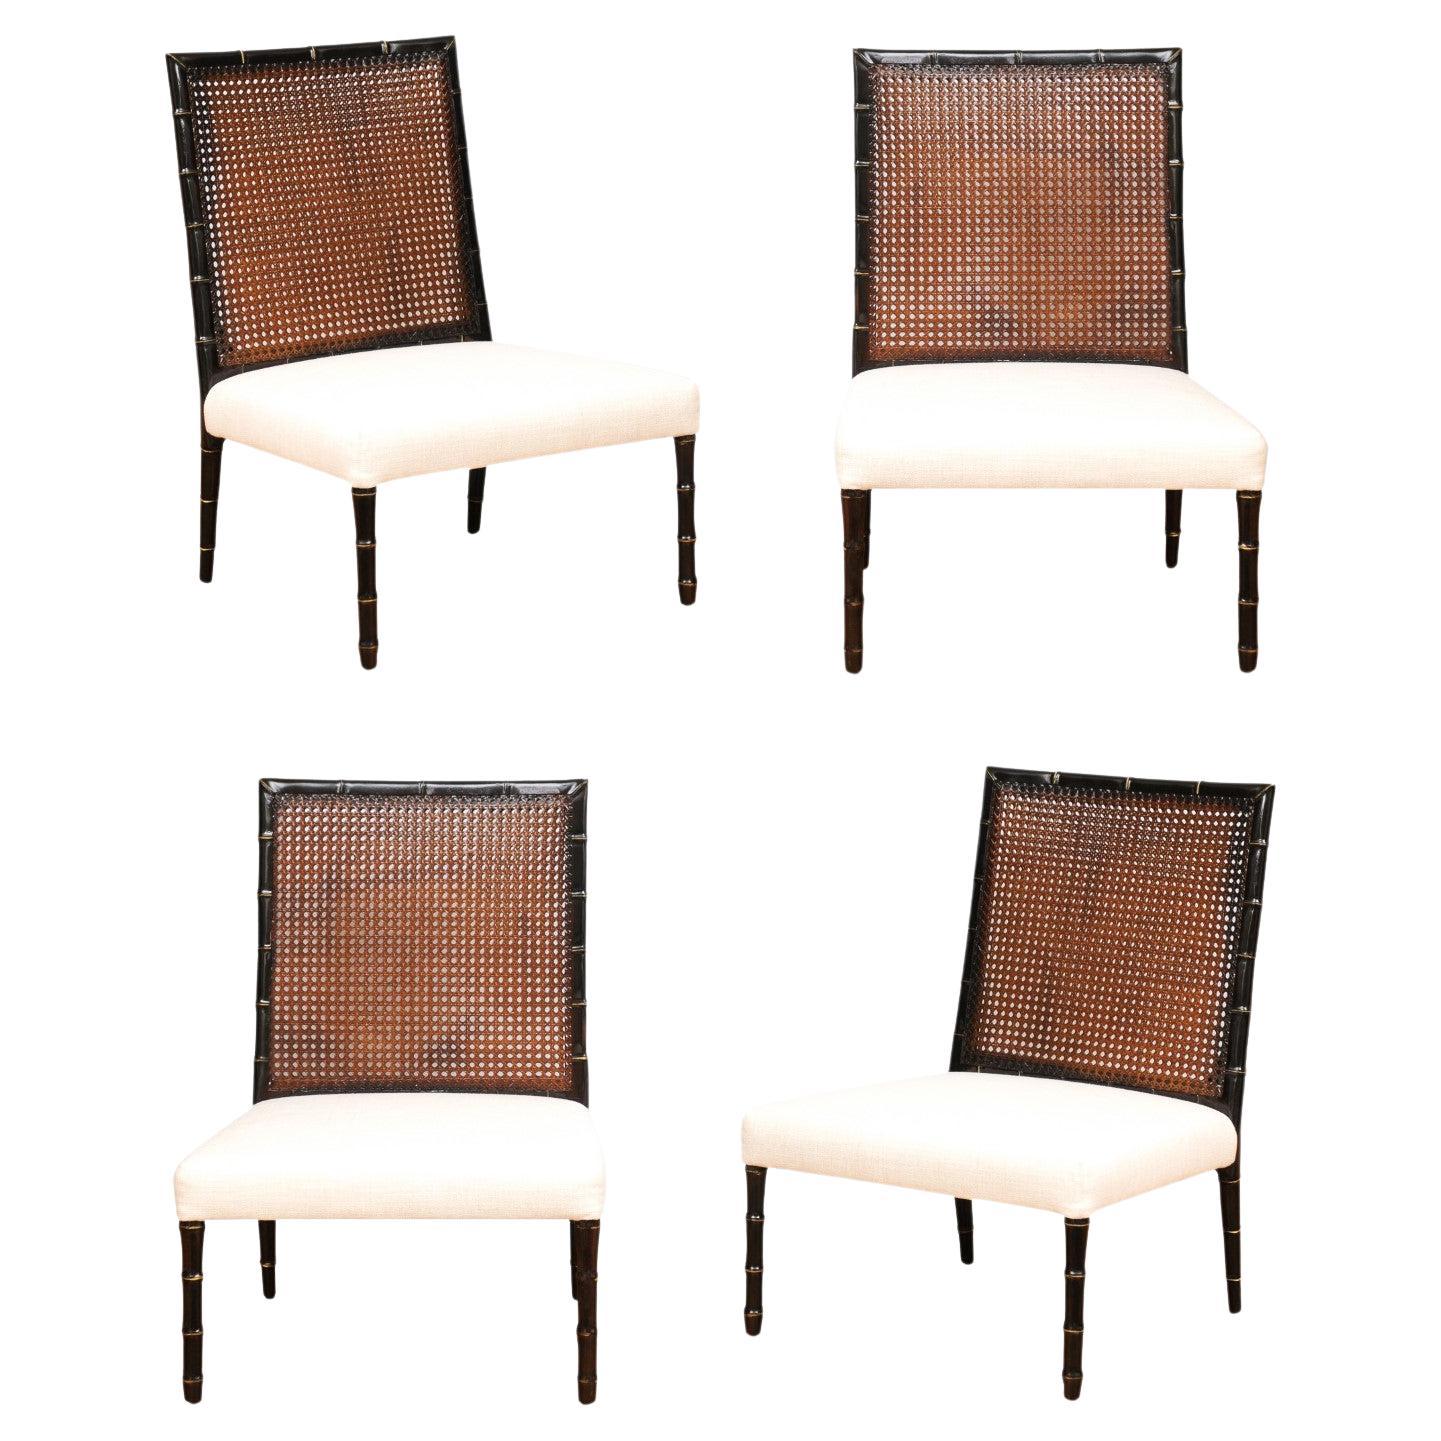 Restaurierter Satz von 4 doppelseitigen Sesseln mit Rohrrückenlehne, restauriert